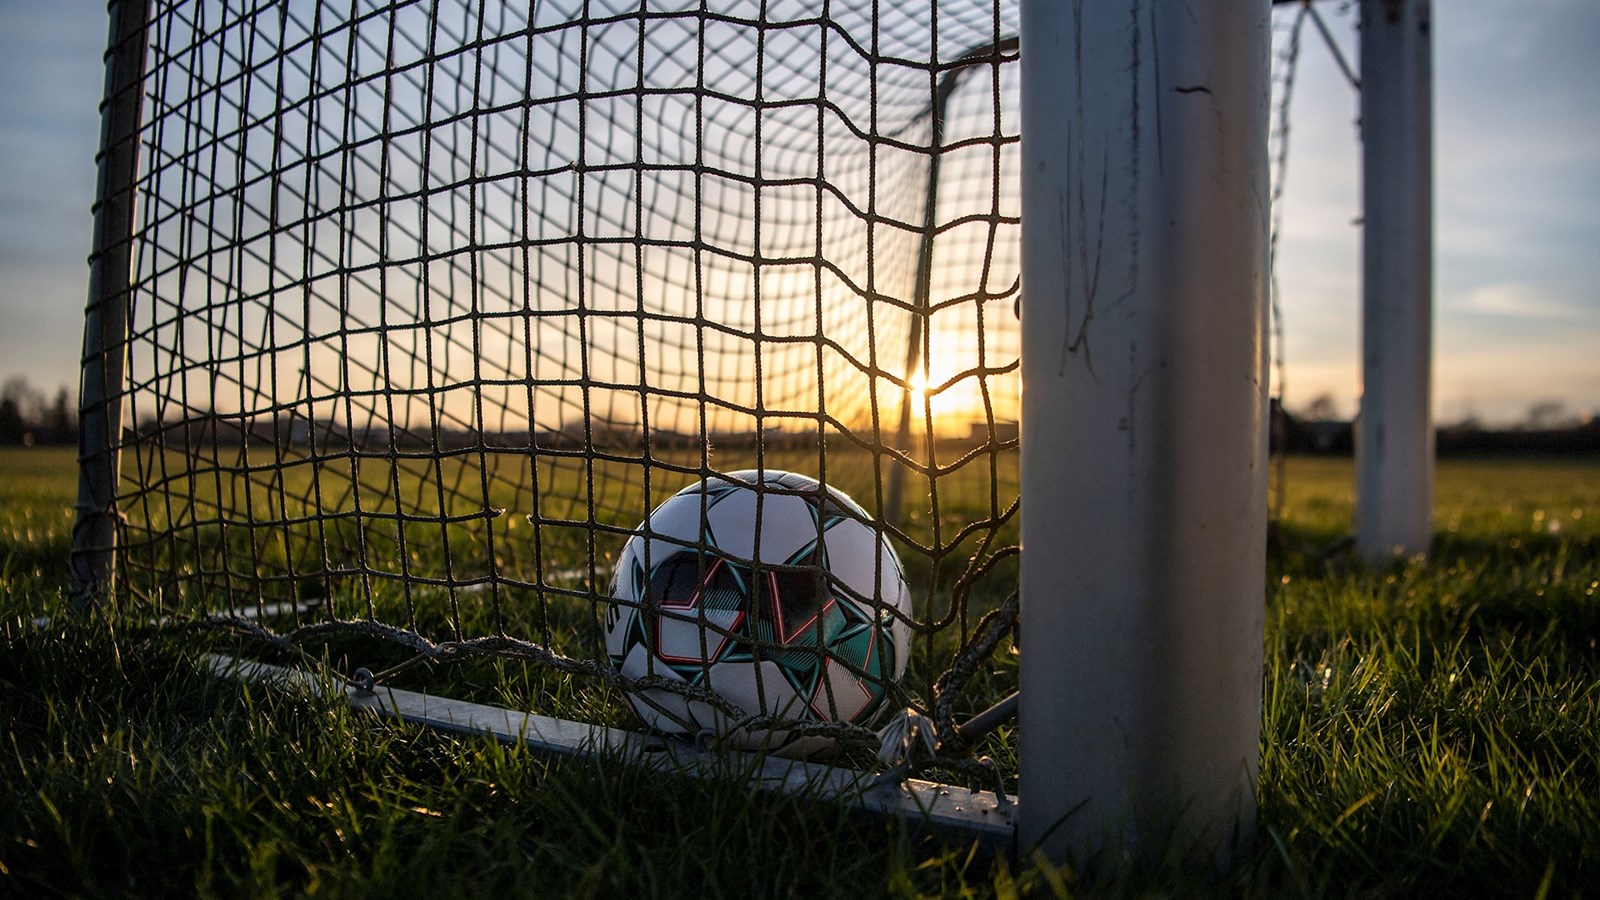 Fodbolden påvirkes: Yderligere 31 kommuner pålægges skærpede corona-restriktioner